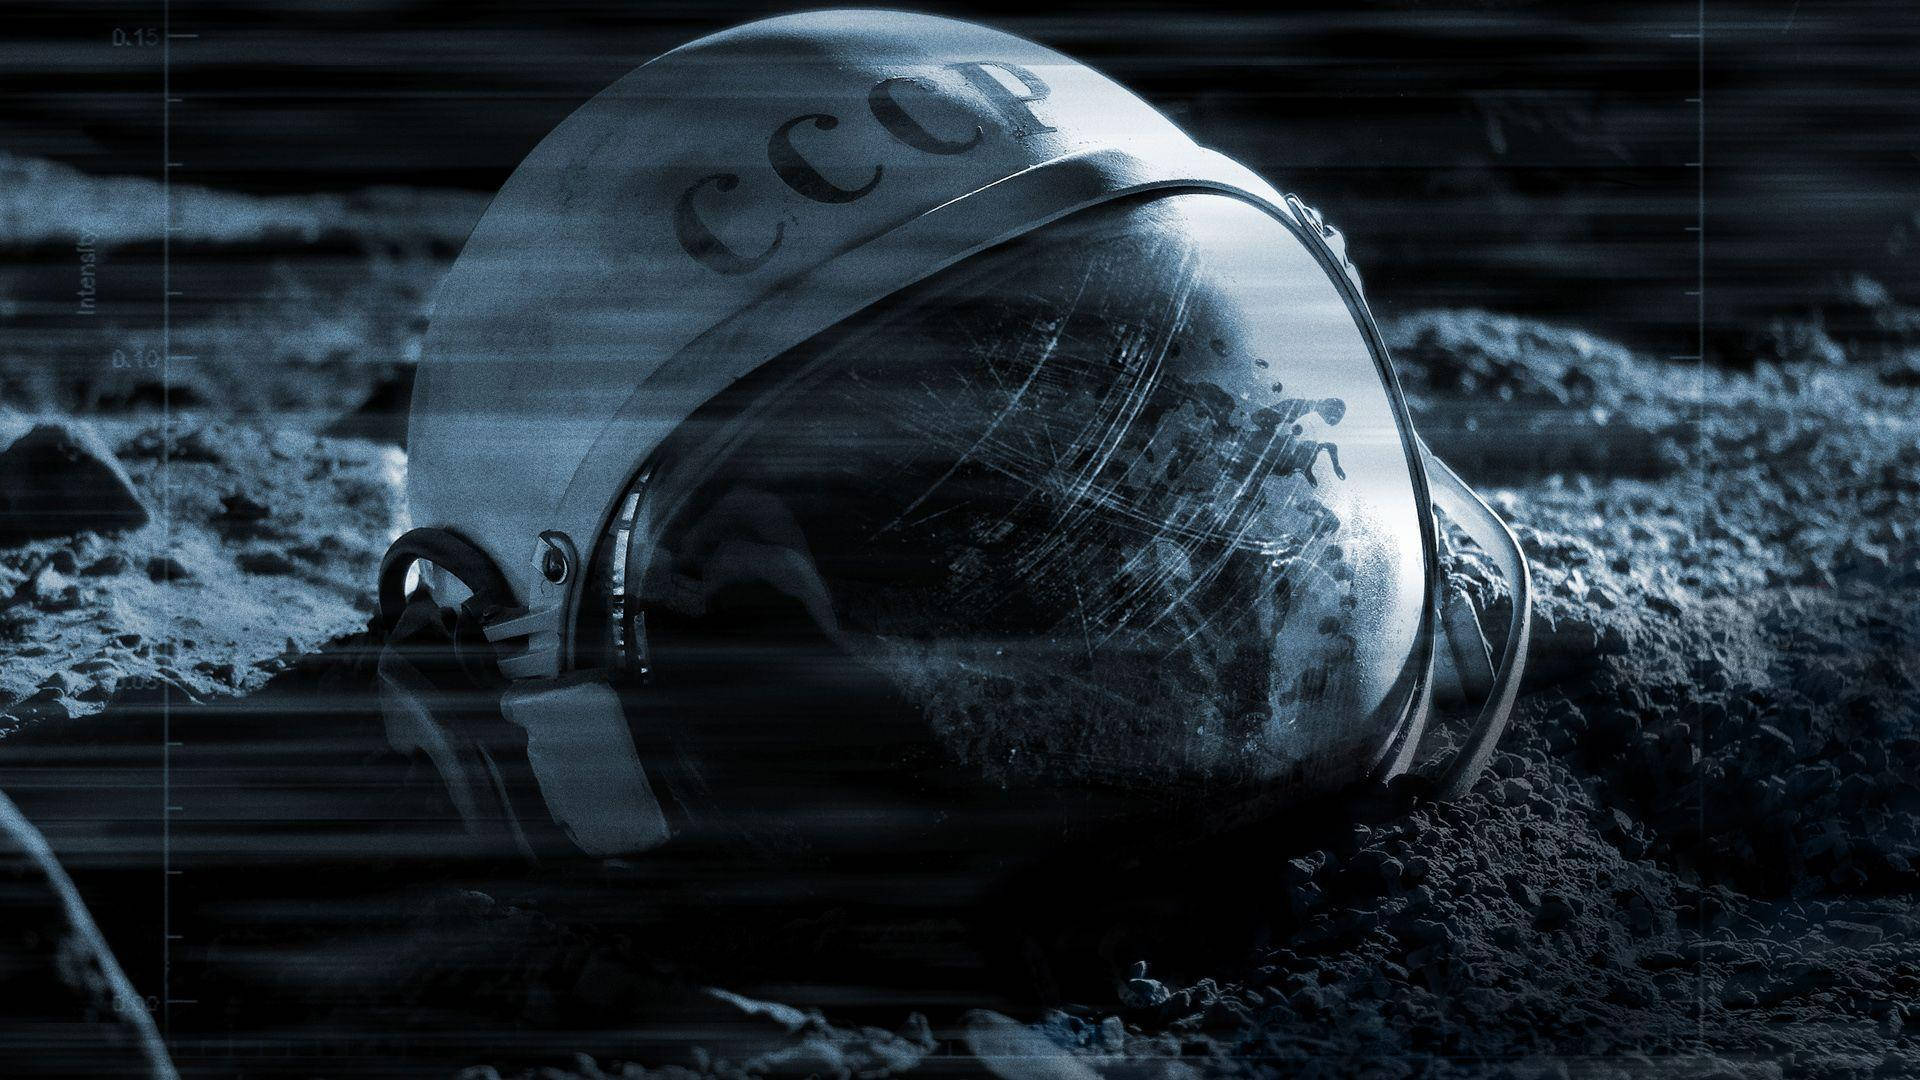 Magnificent Image Of Spaceman Helmet